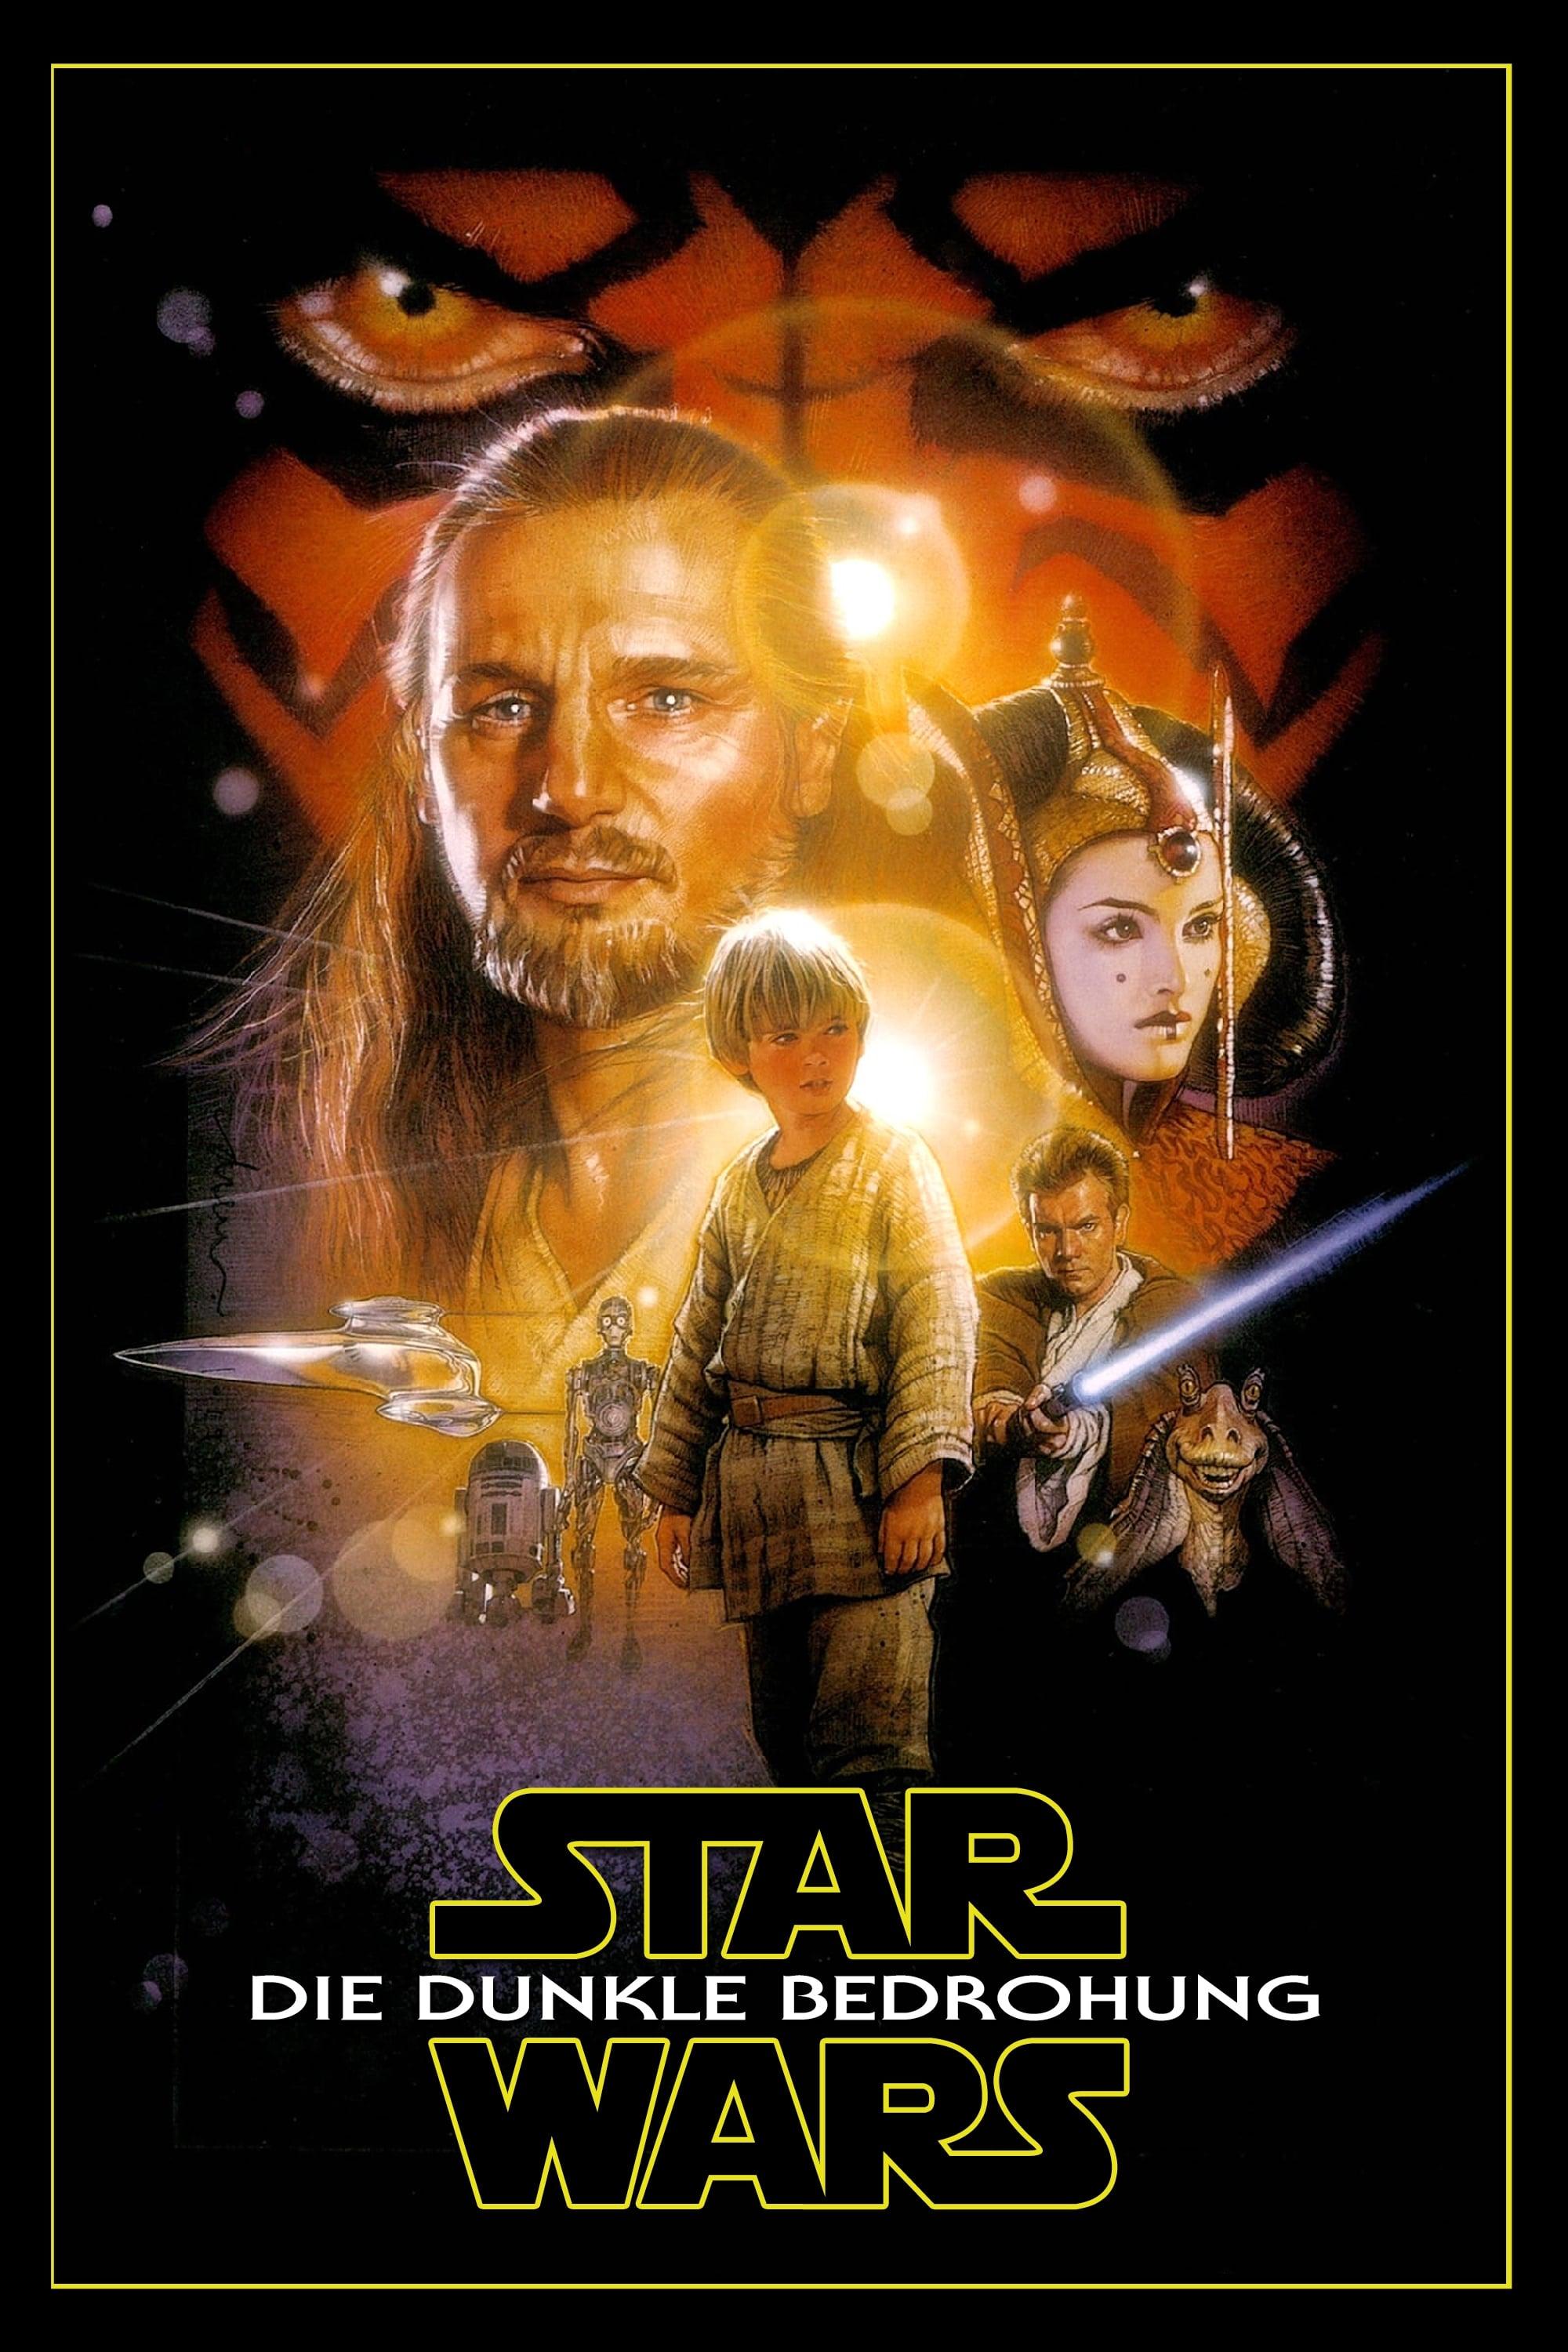 Star Wars: Episode I - Die dunkle Bedrohung poster